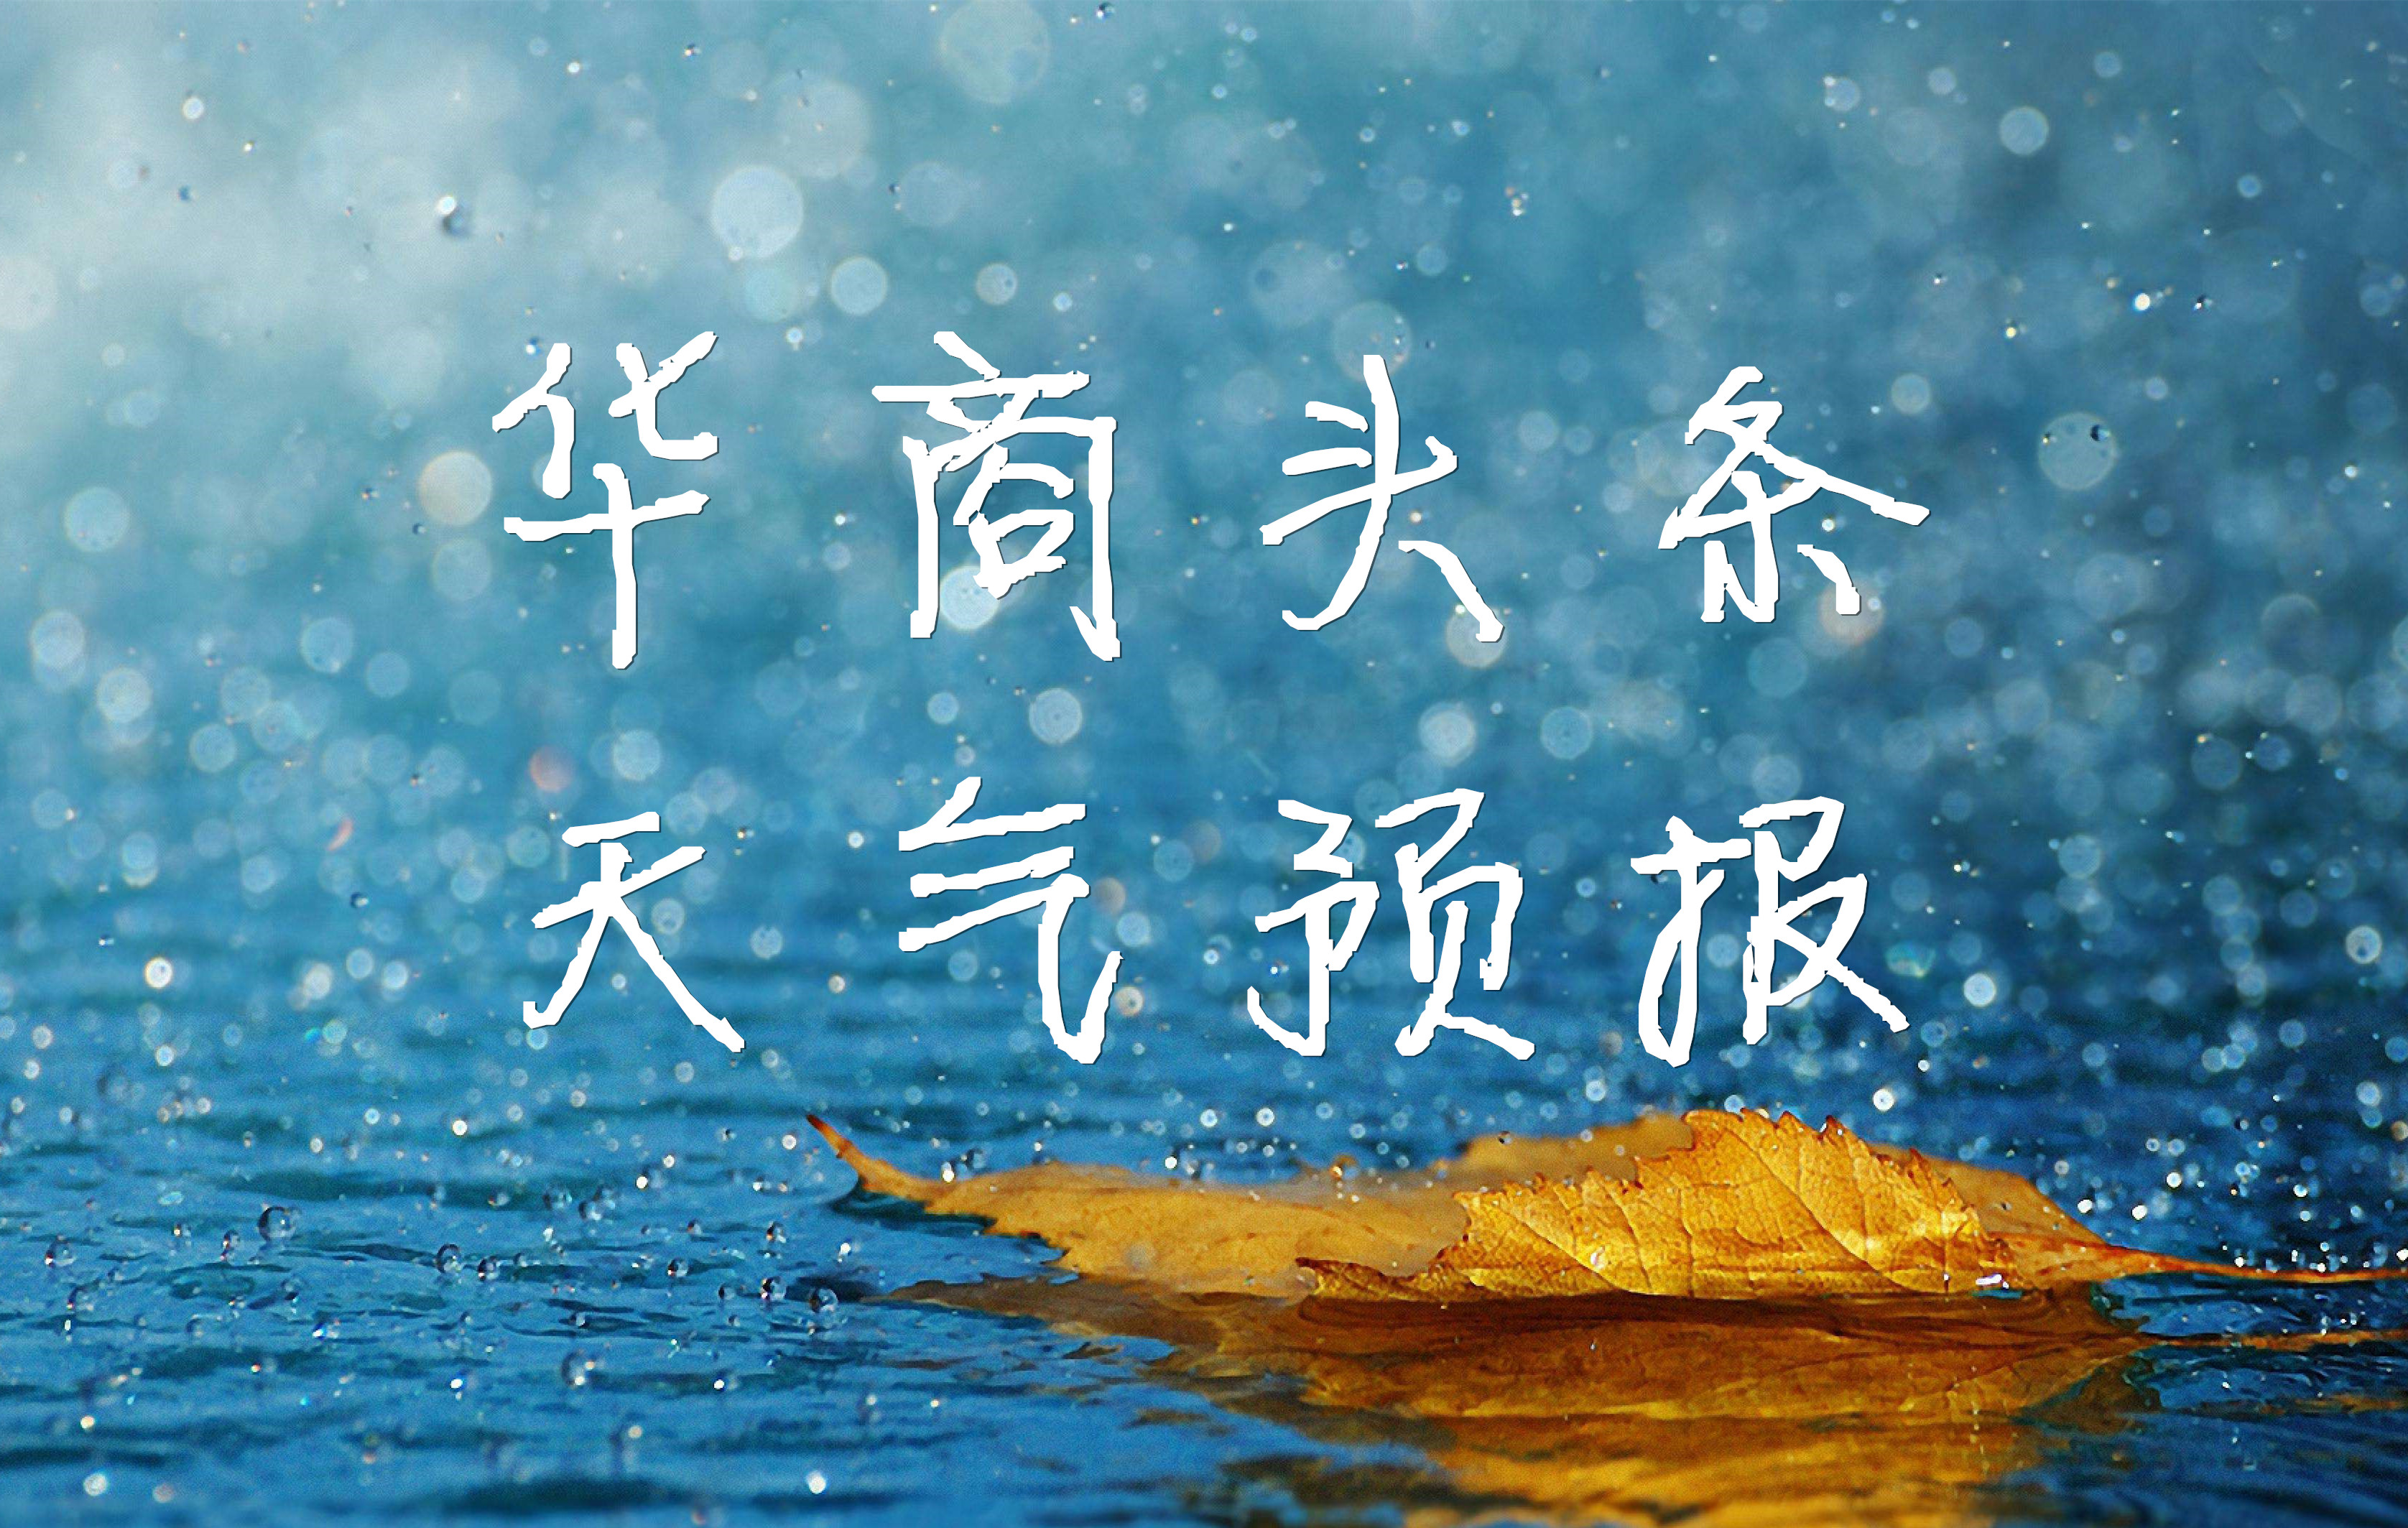 华商头条|“清明节”期间 陕西省大部以阴到多云天气为主